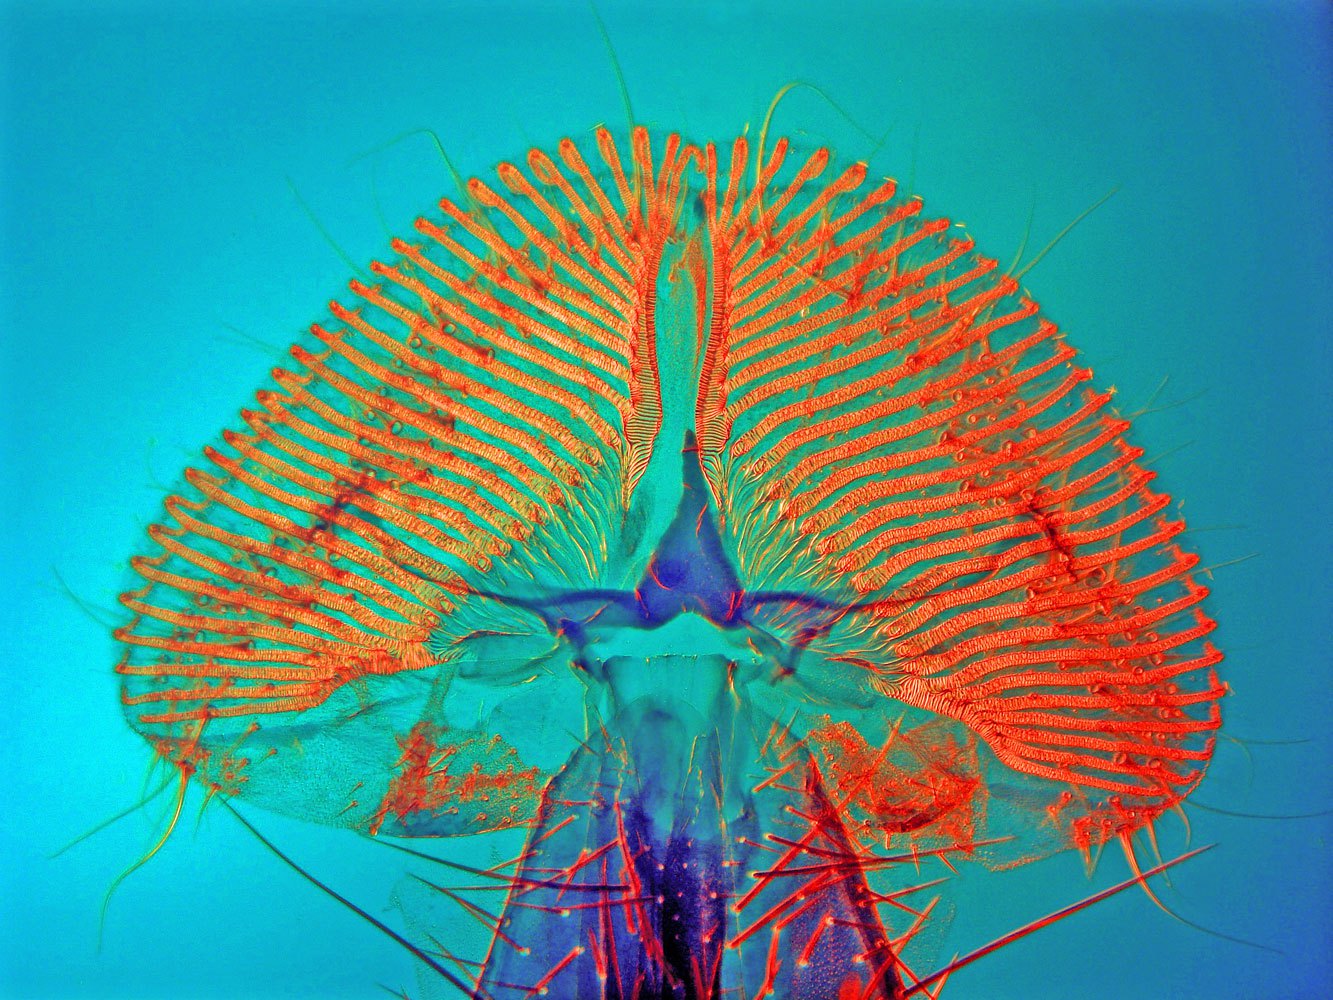 Proboscis of a blowfly.